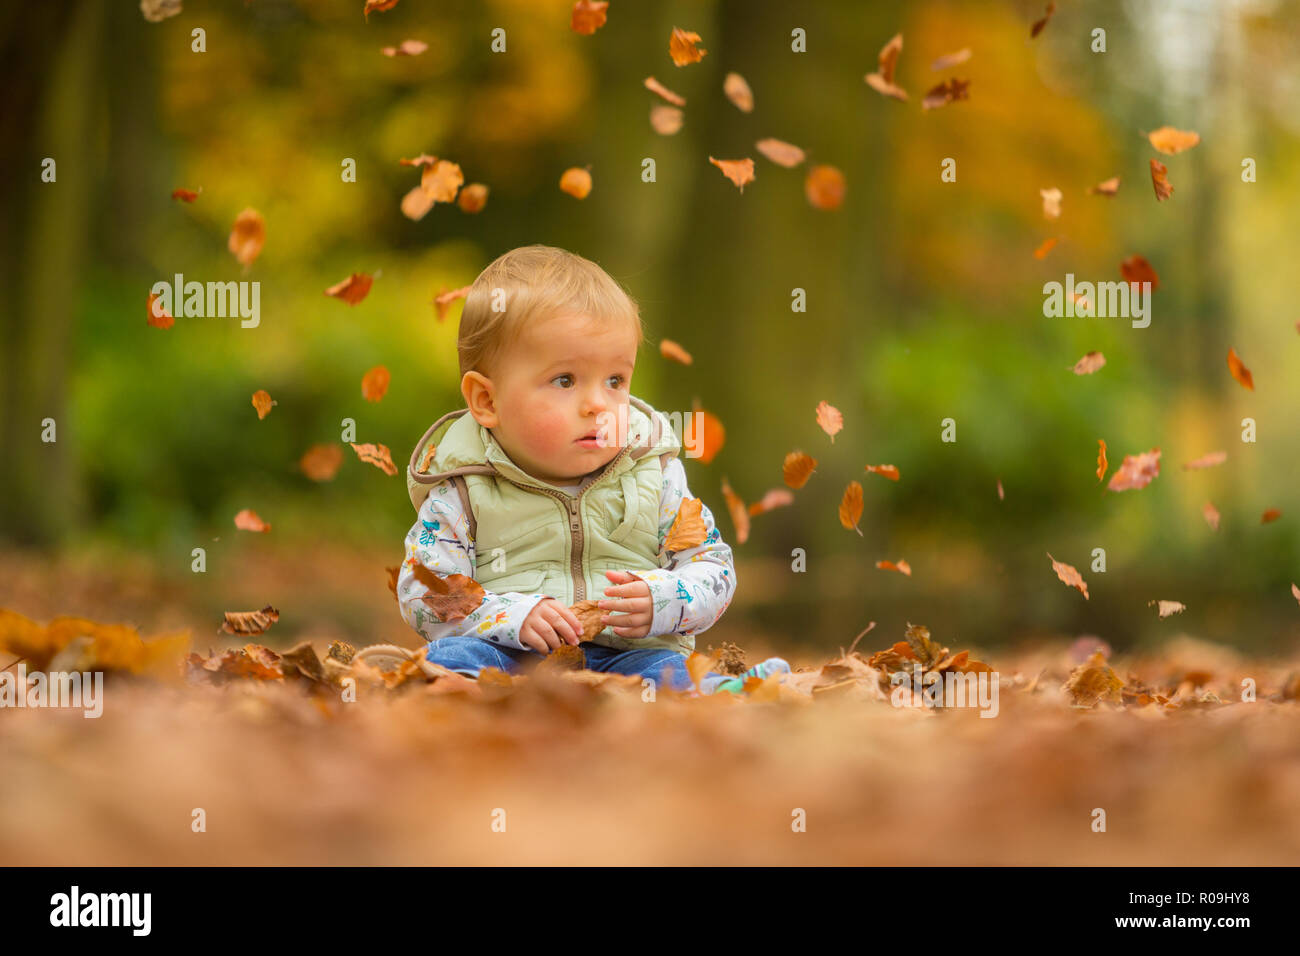 18 mese old boy white seduto in foglie di autunno con le foglie che cadono Foto Stock